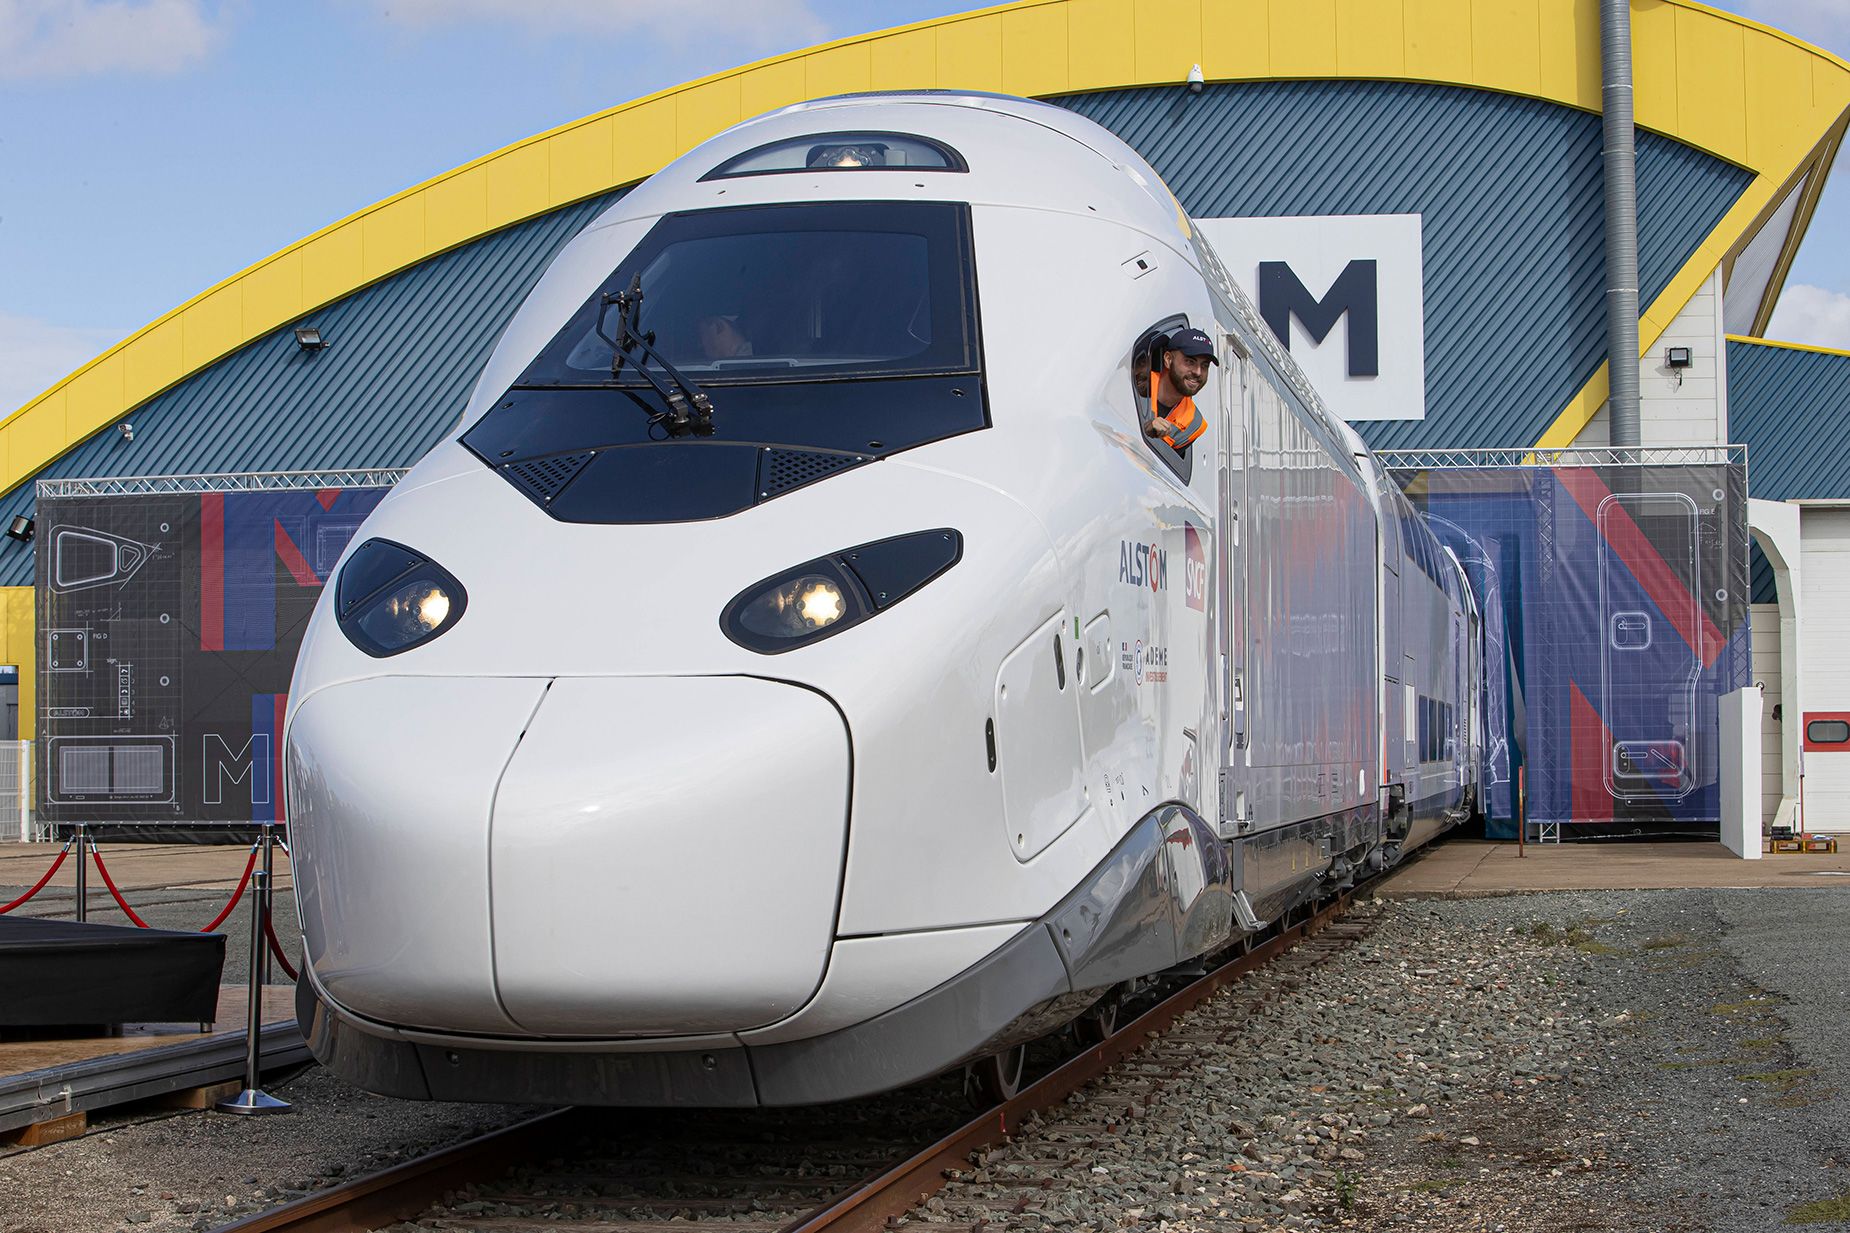 Trenes similares al TGV-M francés podrían utilizarse en las rutas del Eurotúnel.